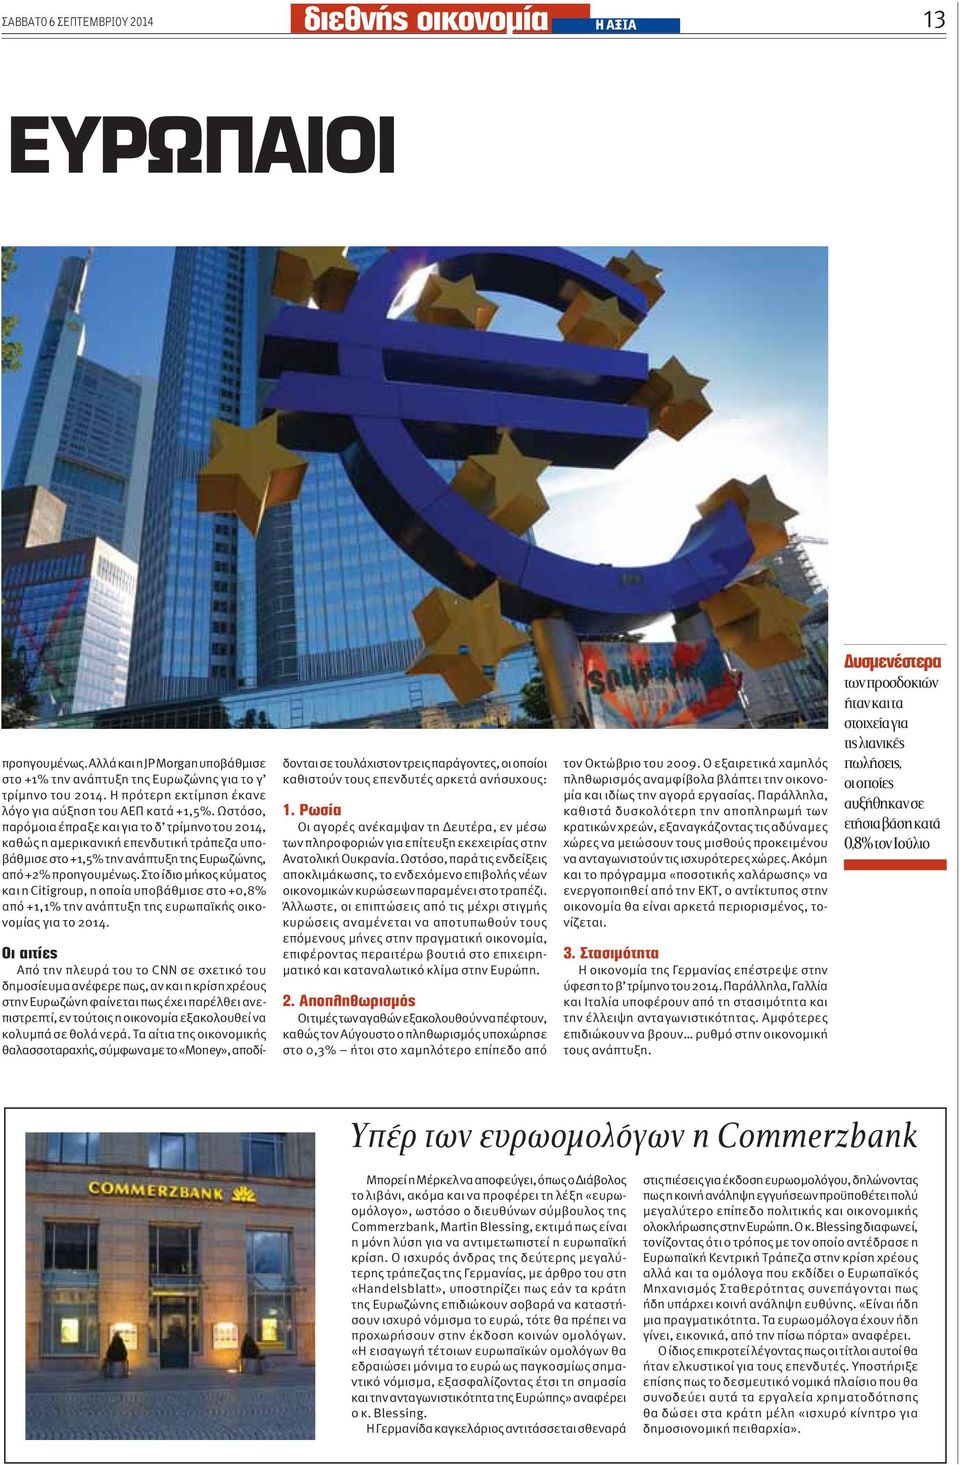 Στο ίδιο μήκος κύματος και η Citigroup, η οποία υποβάθμισε στο +0,8% από +1,1% την ανάπτυξη της ευρωπαϊκής οικονομίας για το 2014.